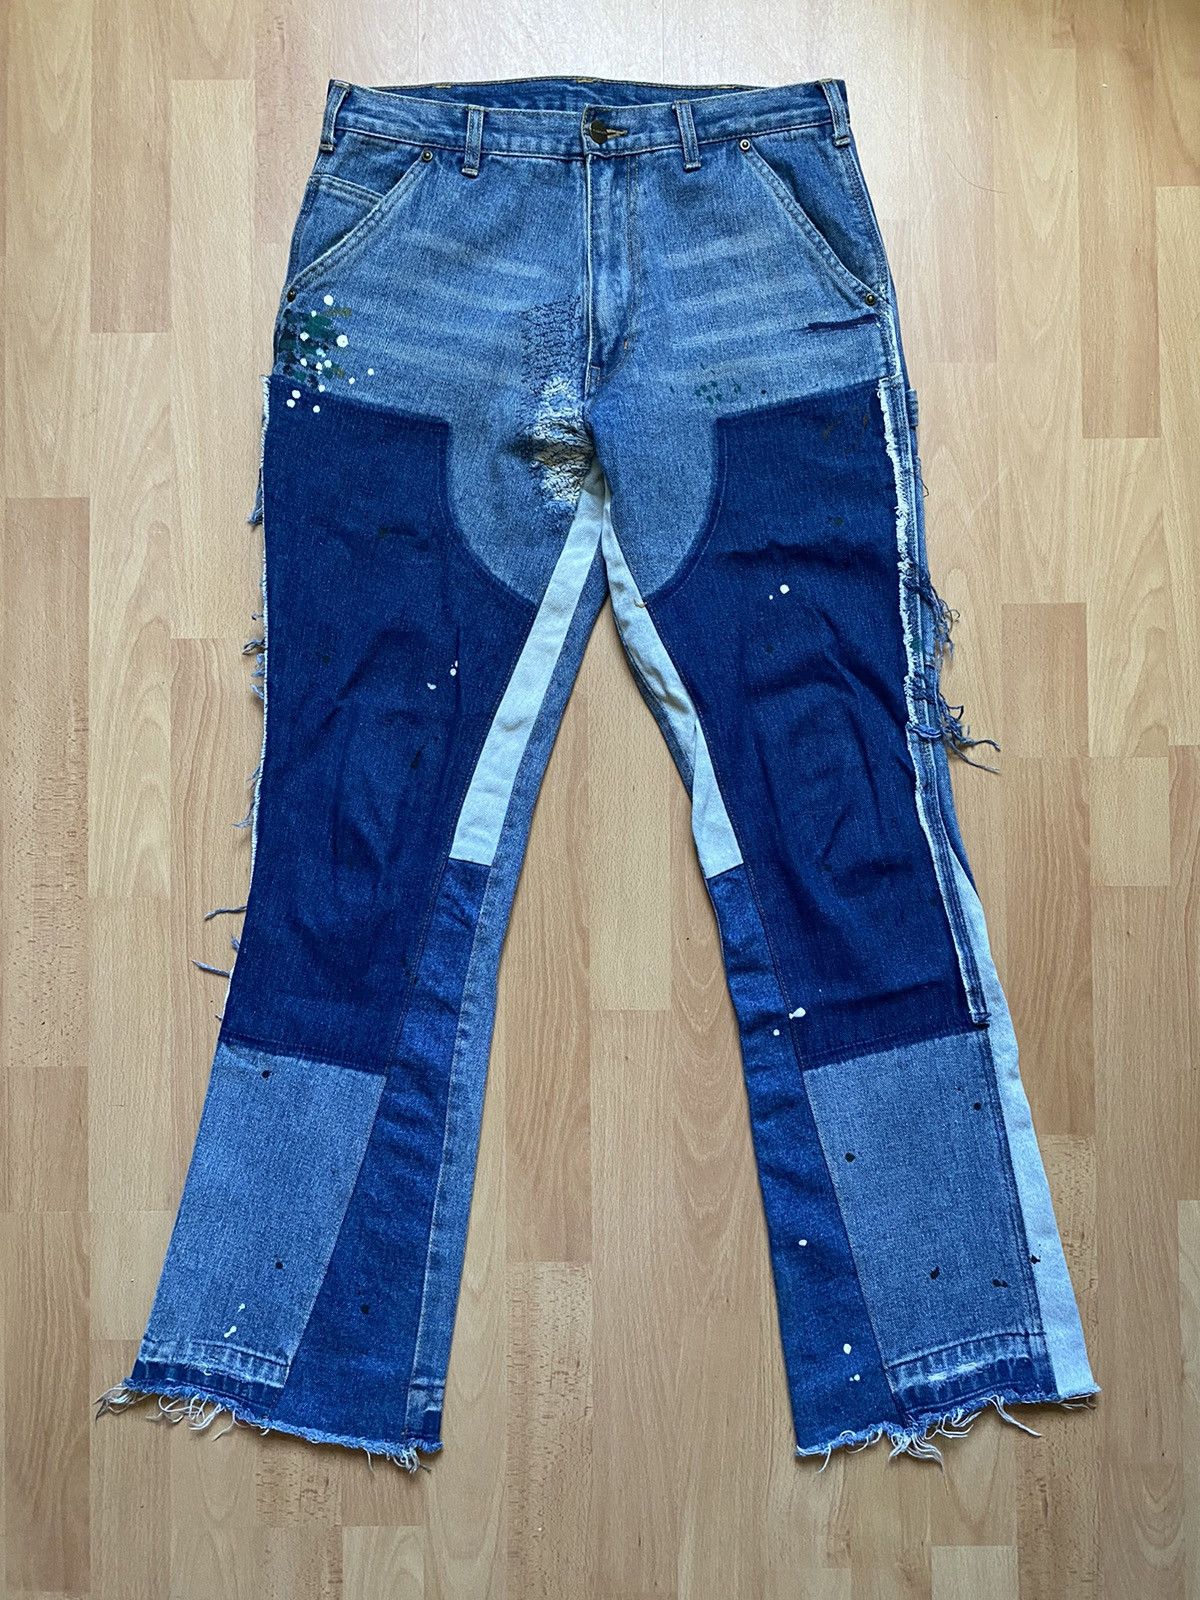 フレアcarhart double patch pants custom flare